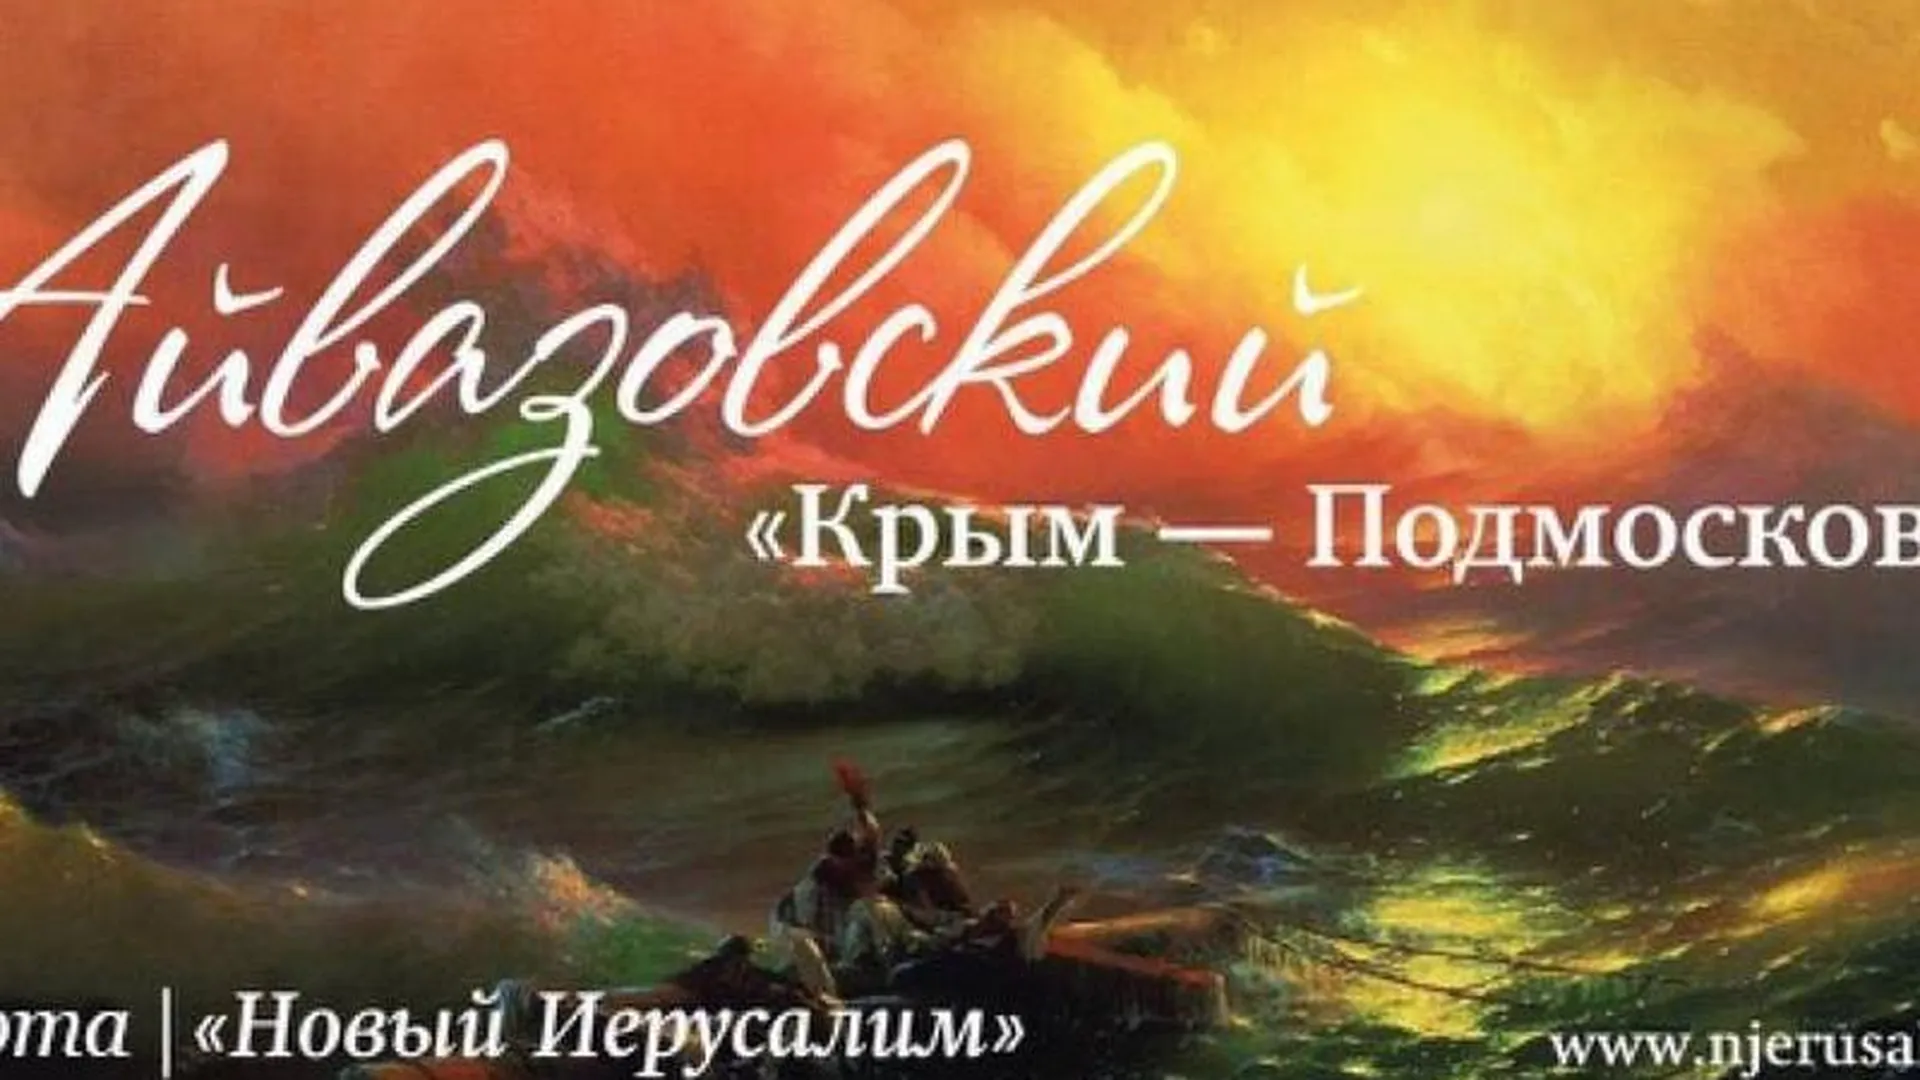 Глава Подмосковья пригласил всех на выставку Айвазовского